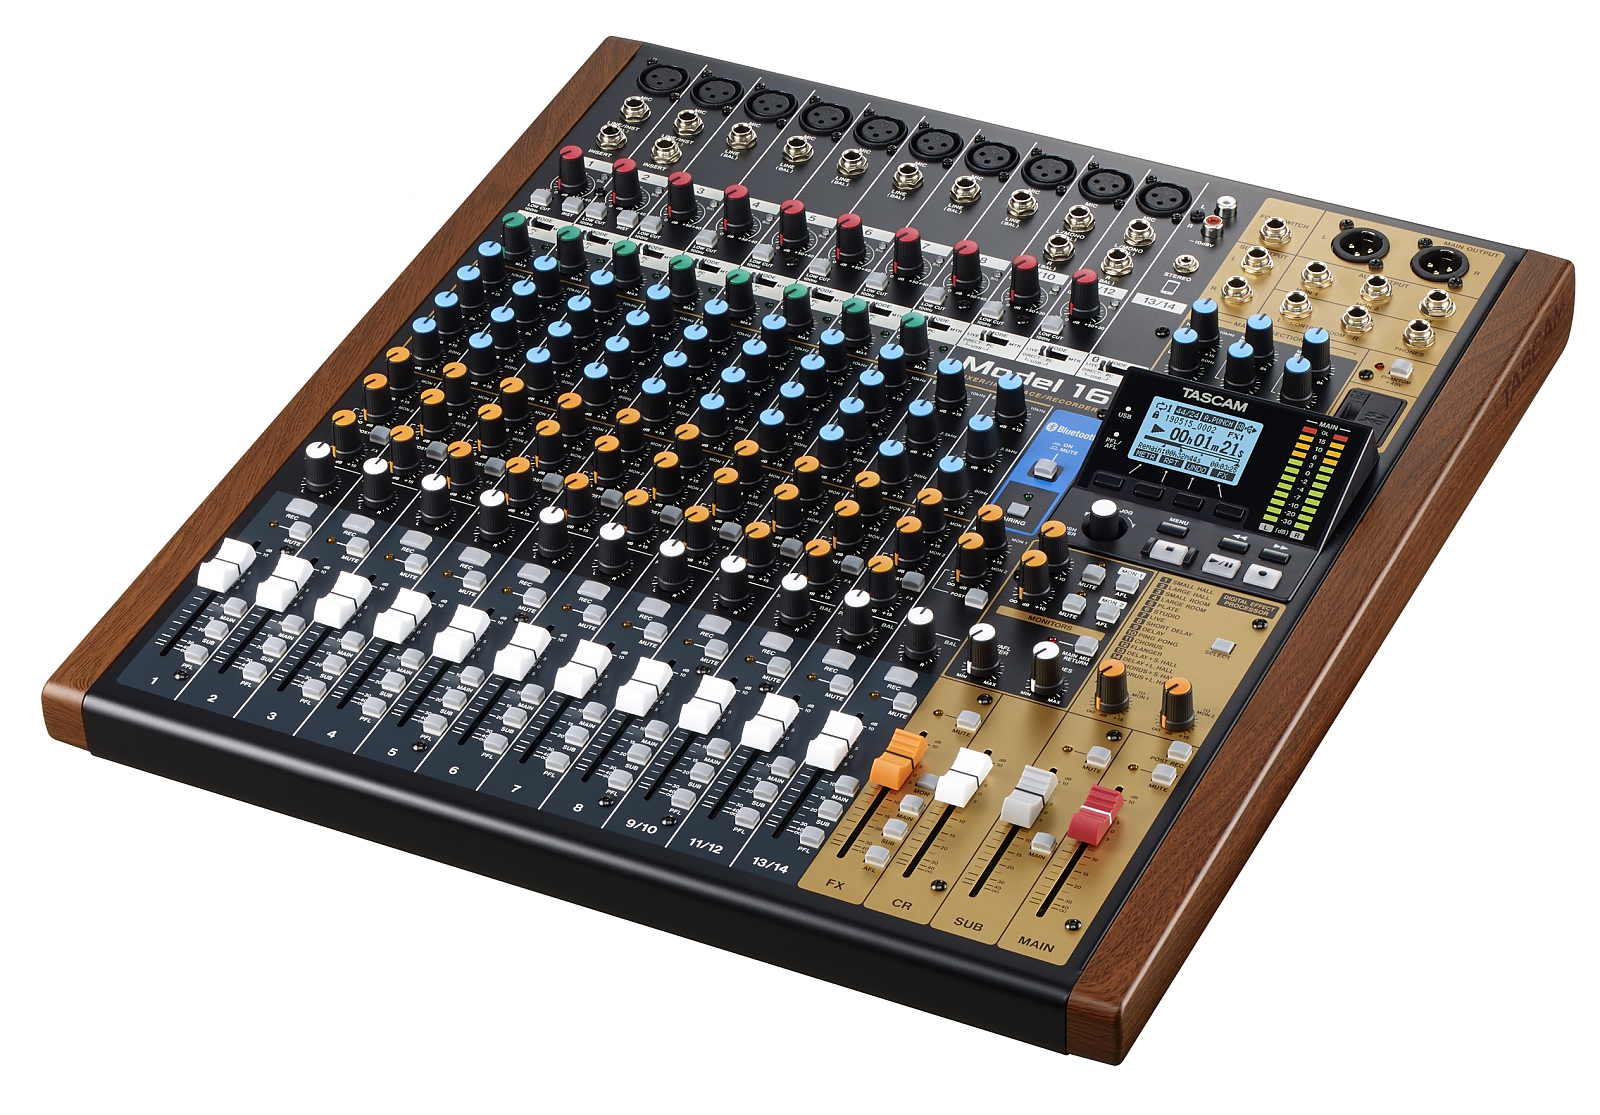 Tascam lance la console Model 16 pour le live - Audiofanzine